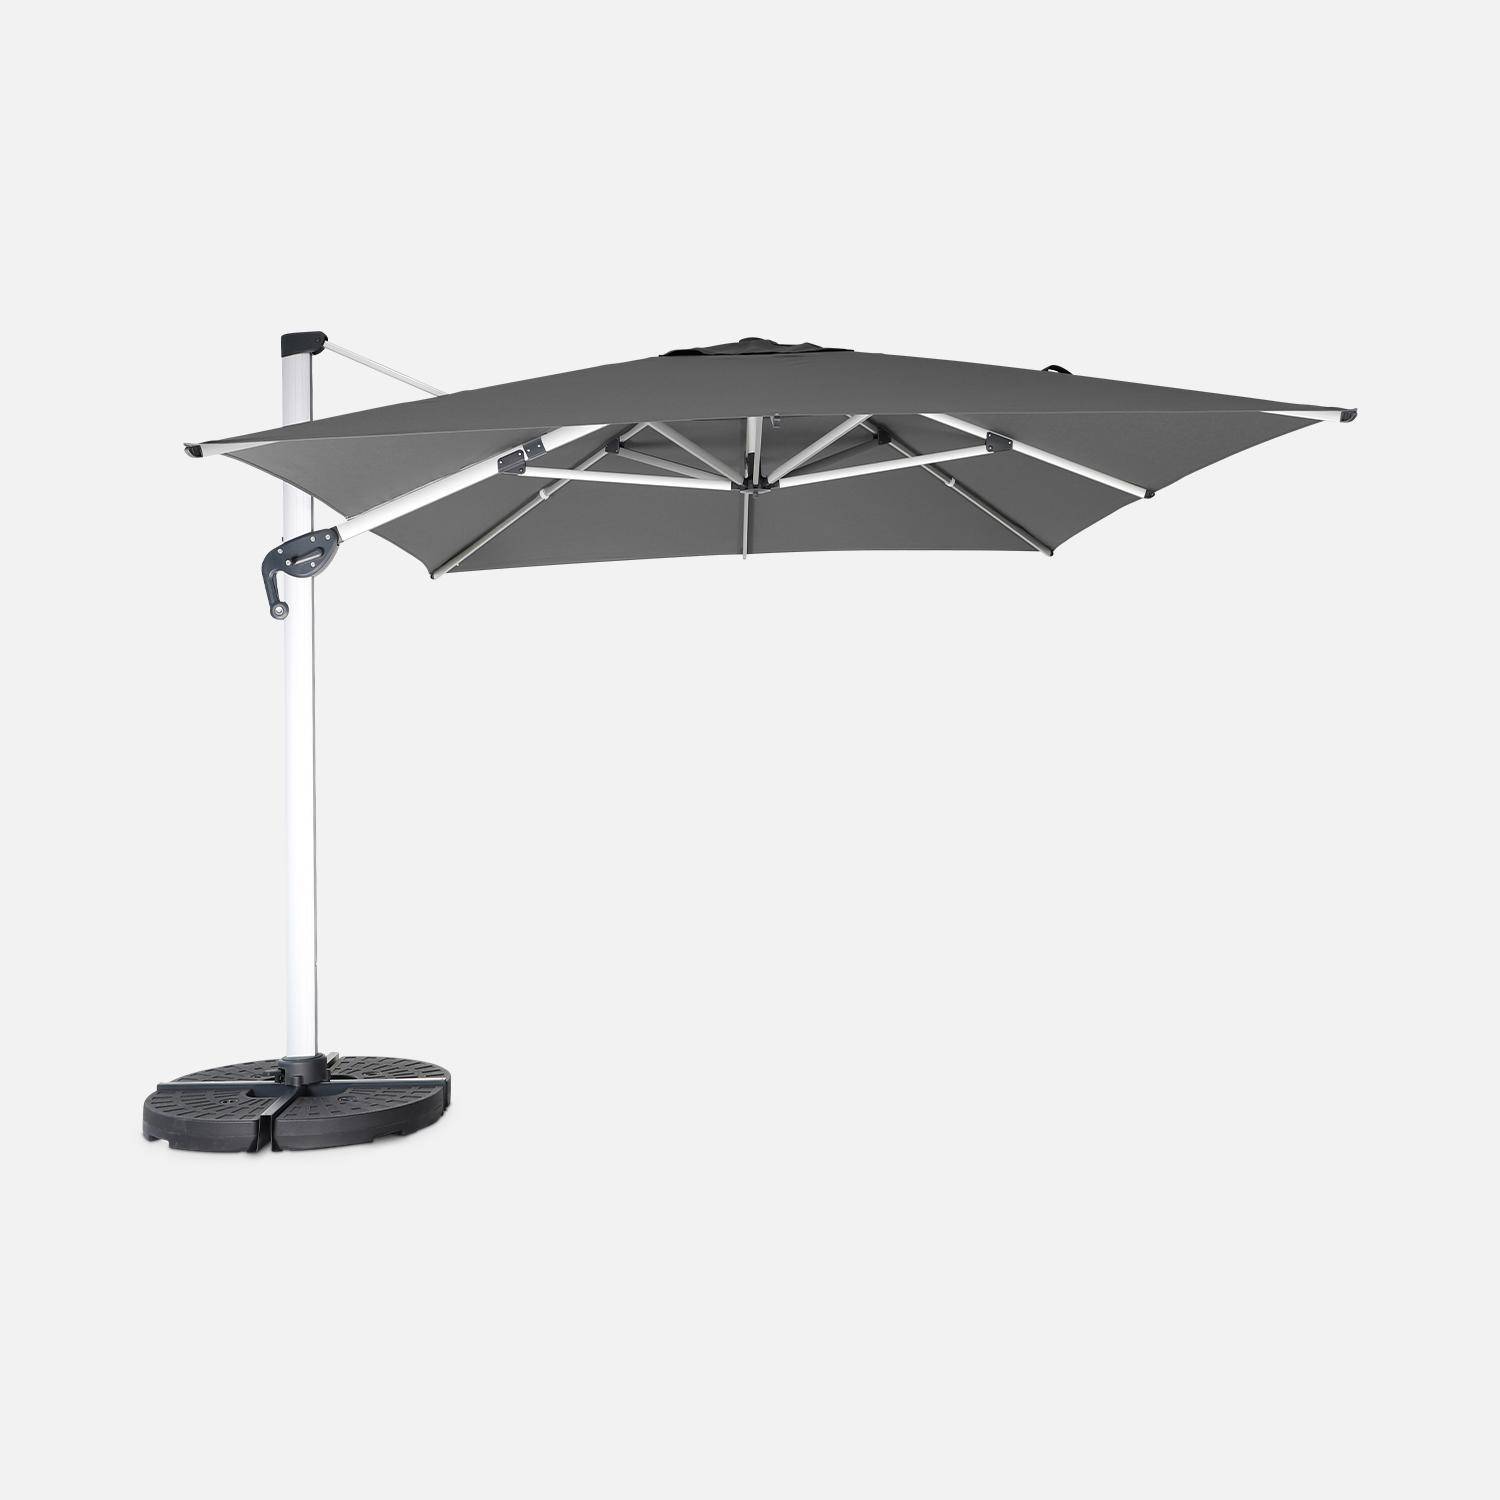 Topkwaliteit parasol, 3x4m, grijs polyester doek, geanodiseerd aluminium frame, hoes inbegrepen,sweeek,Photo2